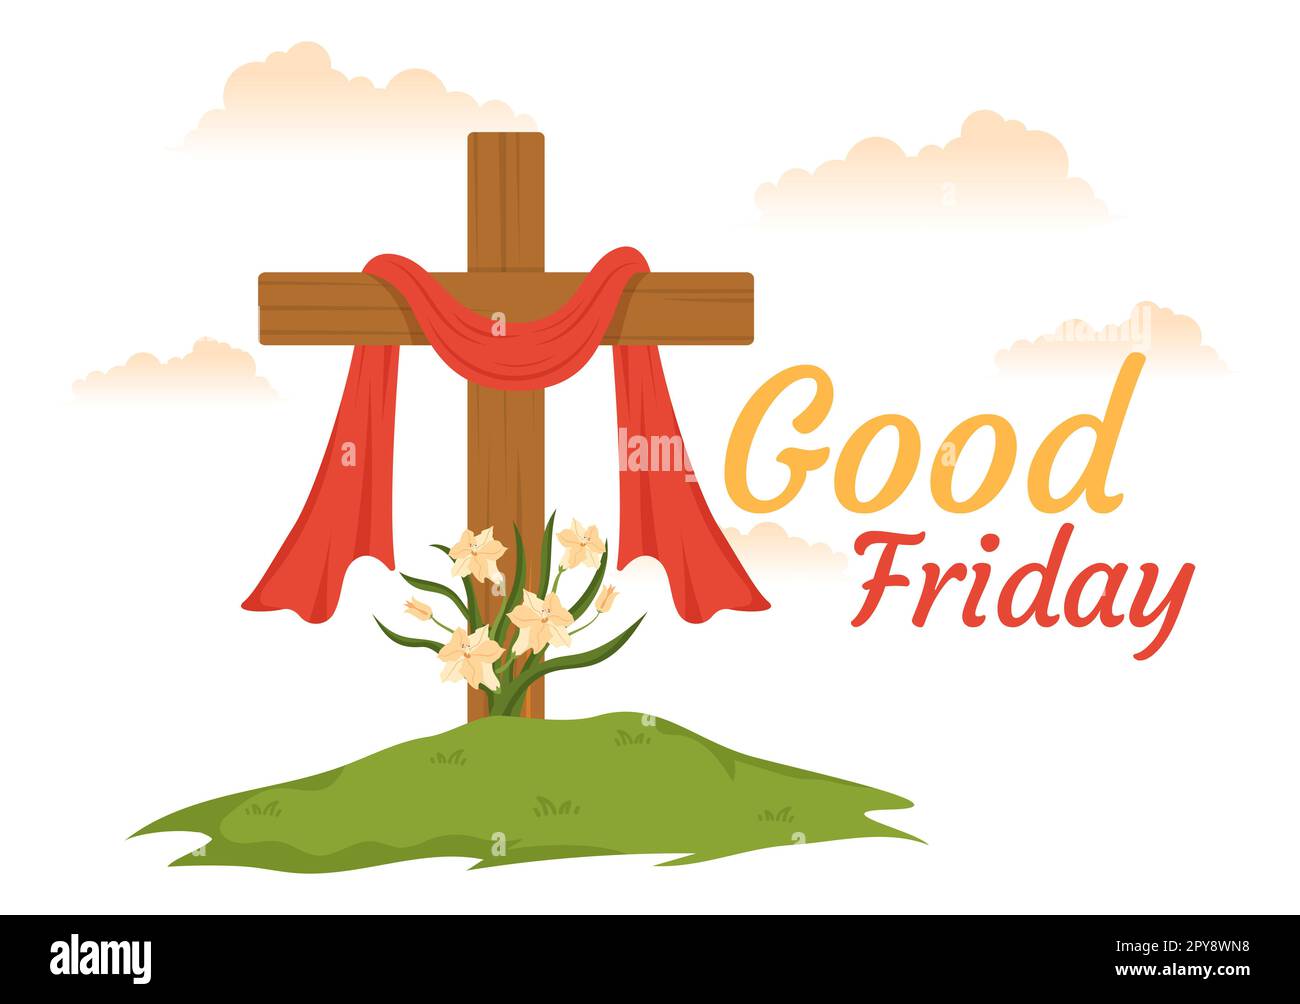 Bonne illustration du Vendredi avec la fête chrétienne de Jésus Christ Crucifixion en dessin à la main pour bannière Web ou modèles de page d'arrivée Banque D'Images